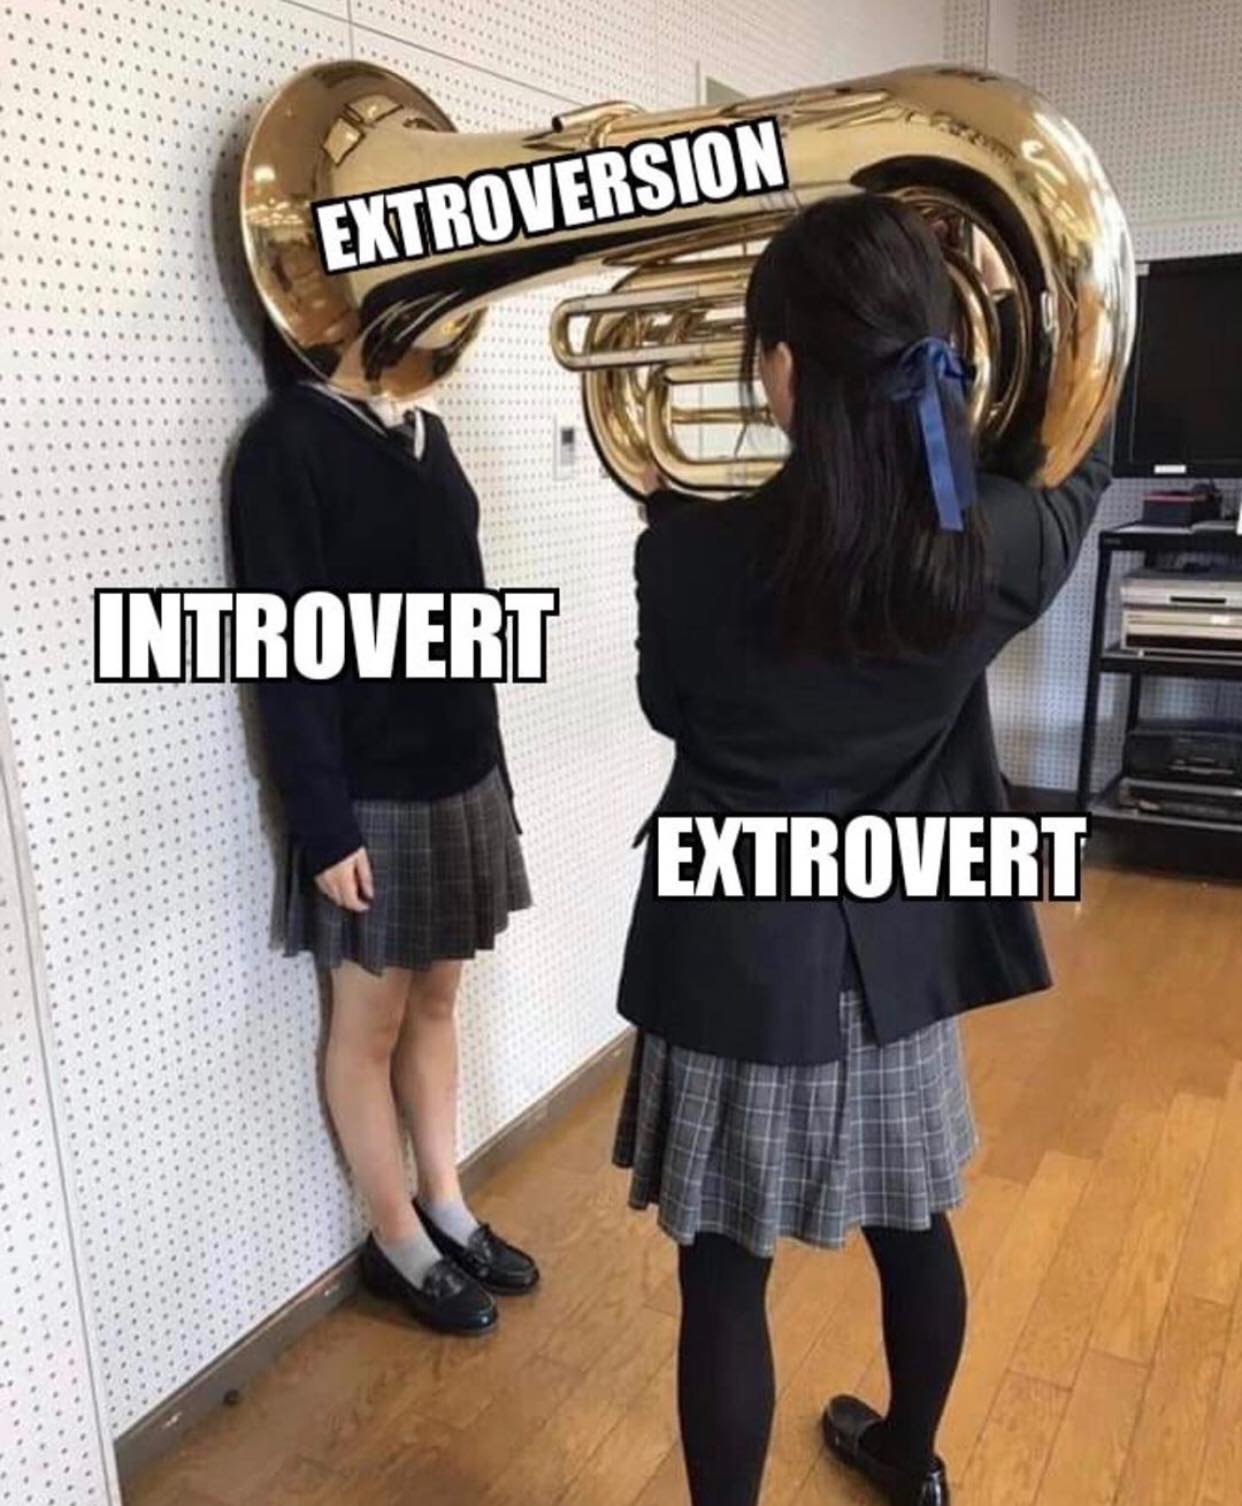 Tuba - Extroversion Introvert Extrovert